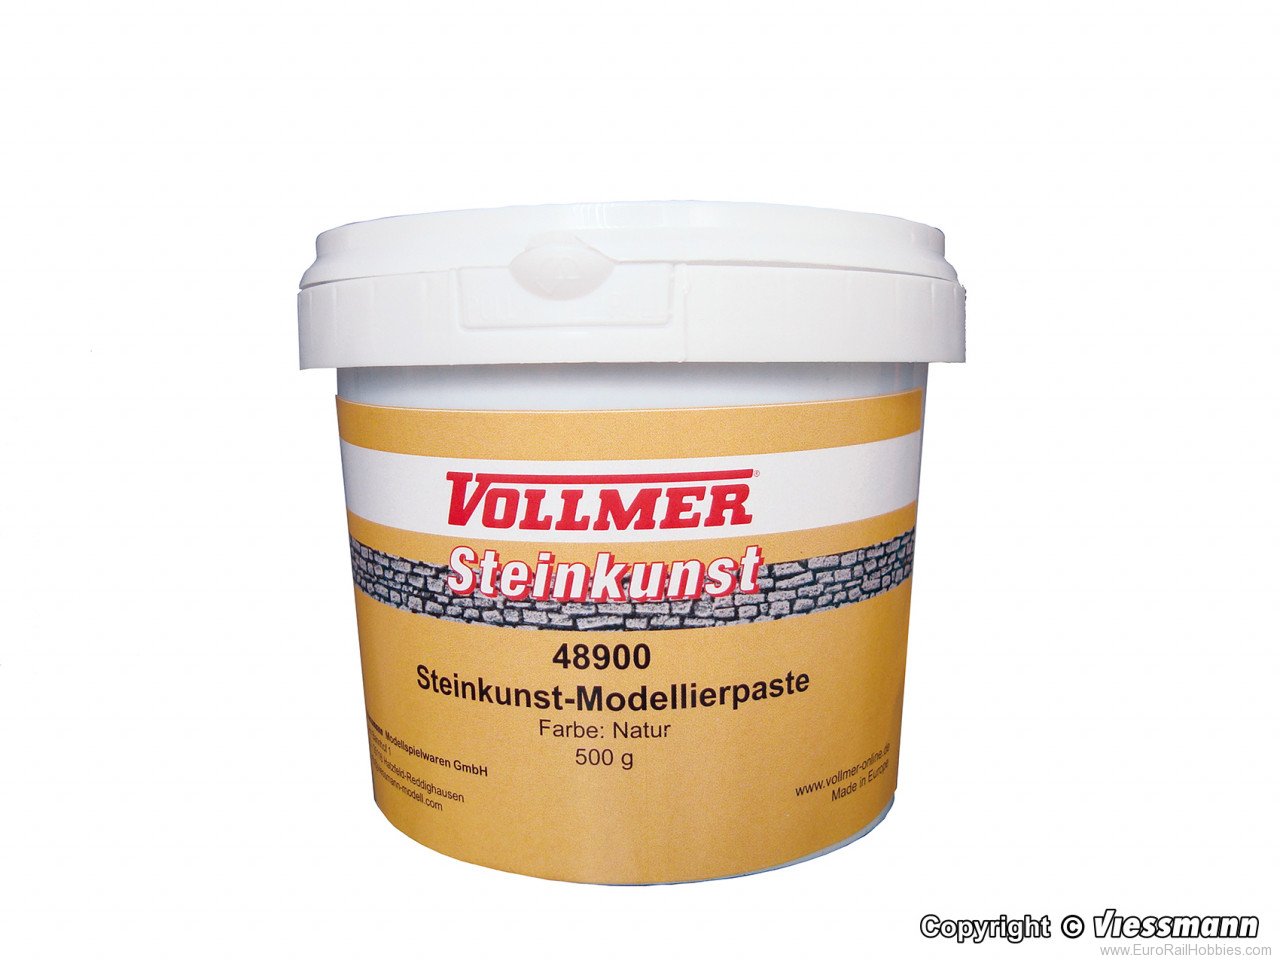 Vollmer 48900 Stone Art Modelling Paste, Natural Color 500g